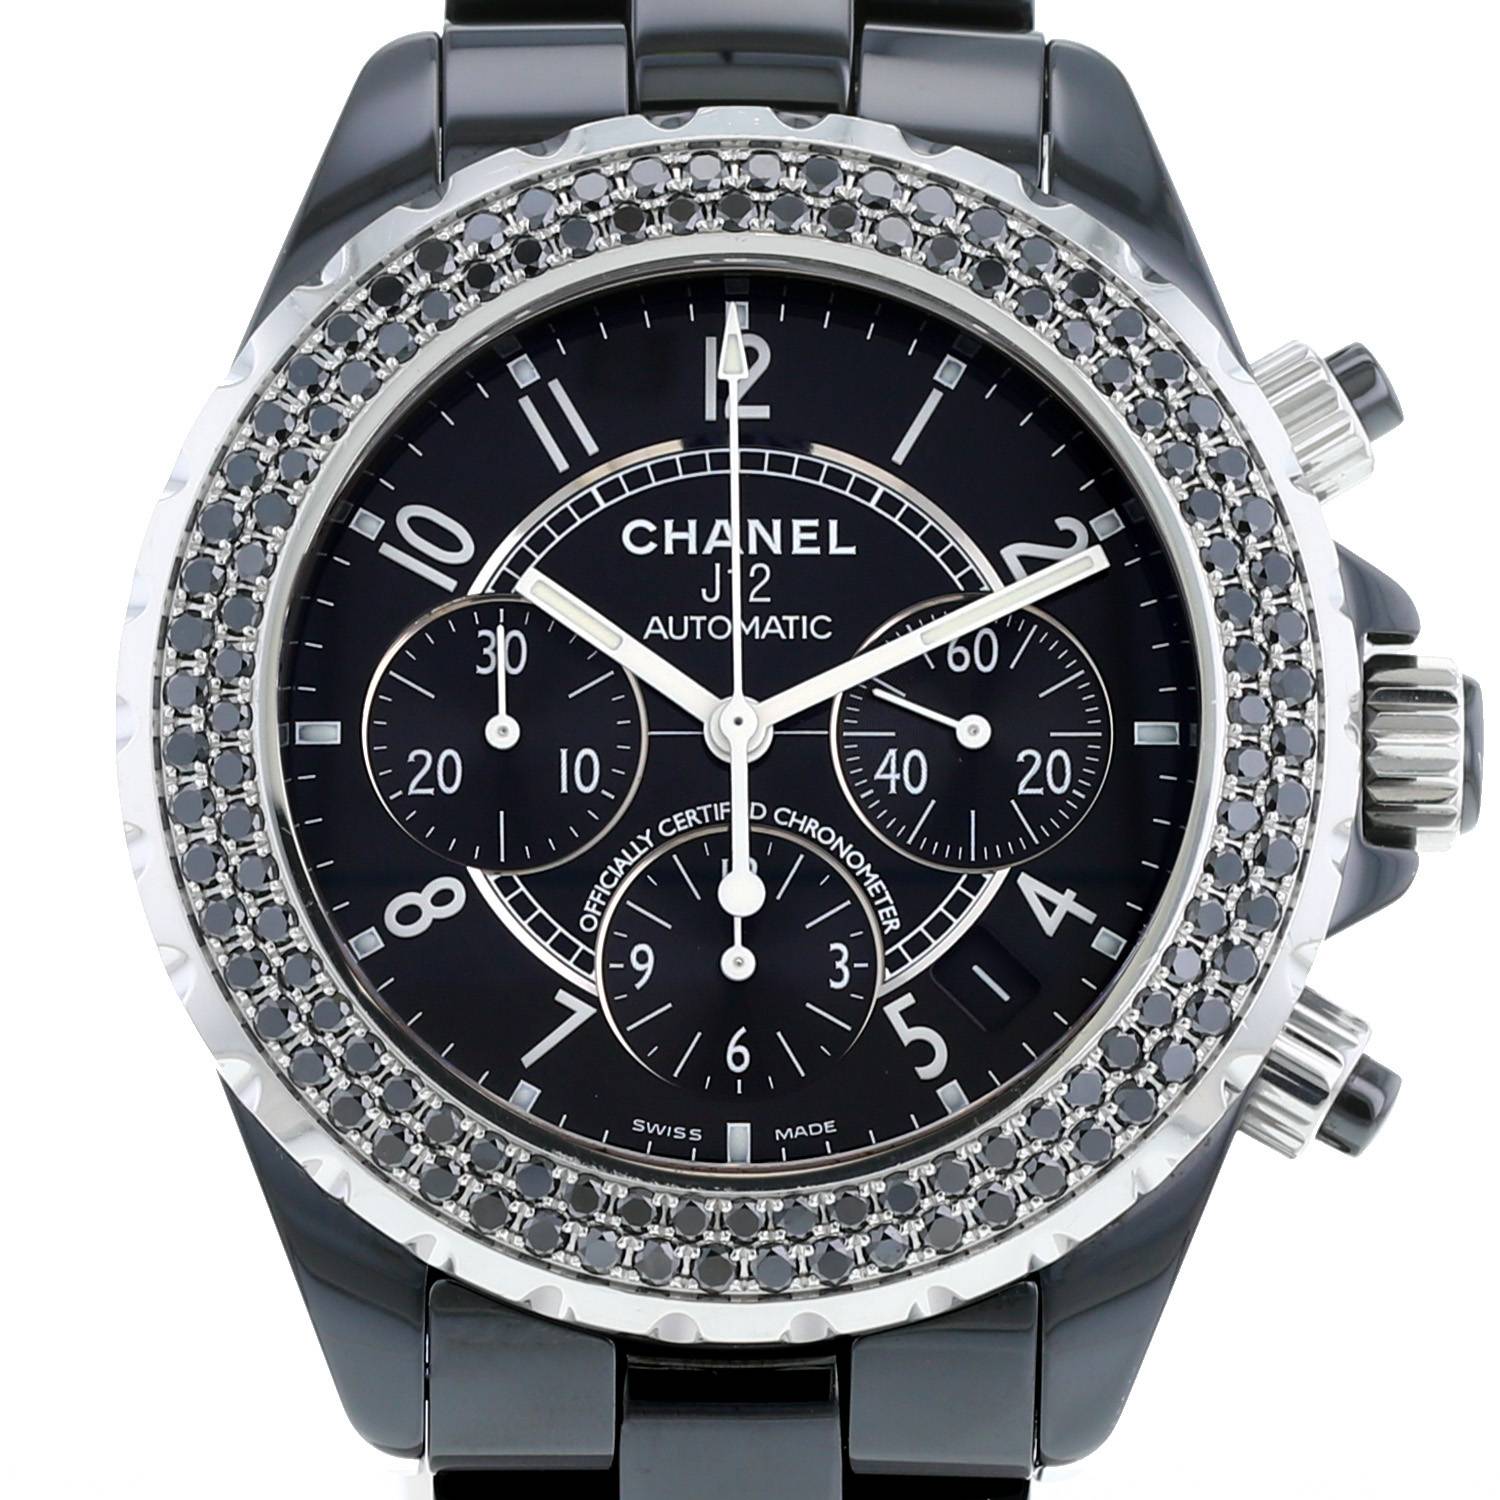 Montre Chanel J12 Chronographe en céramique noire et acier Vers 2010 - 00pp